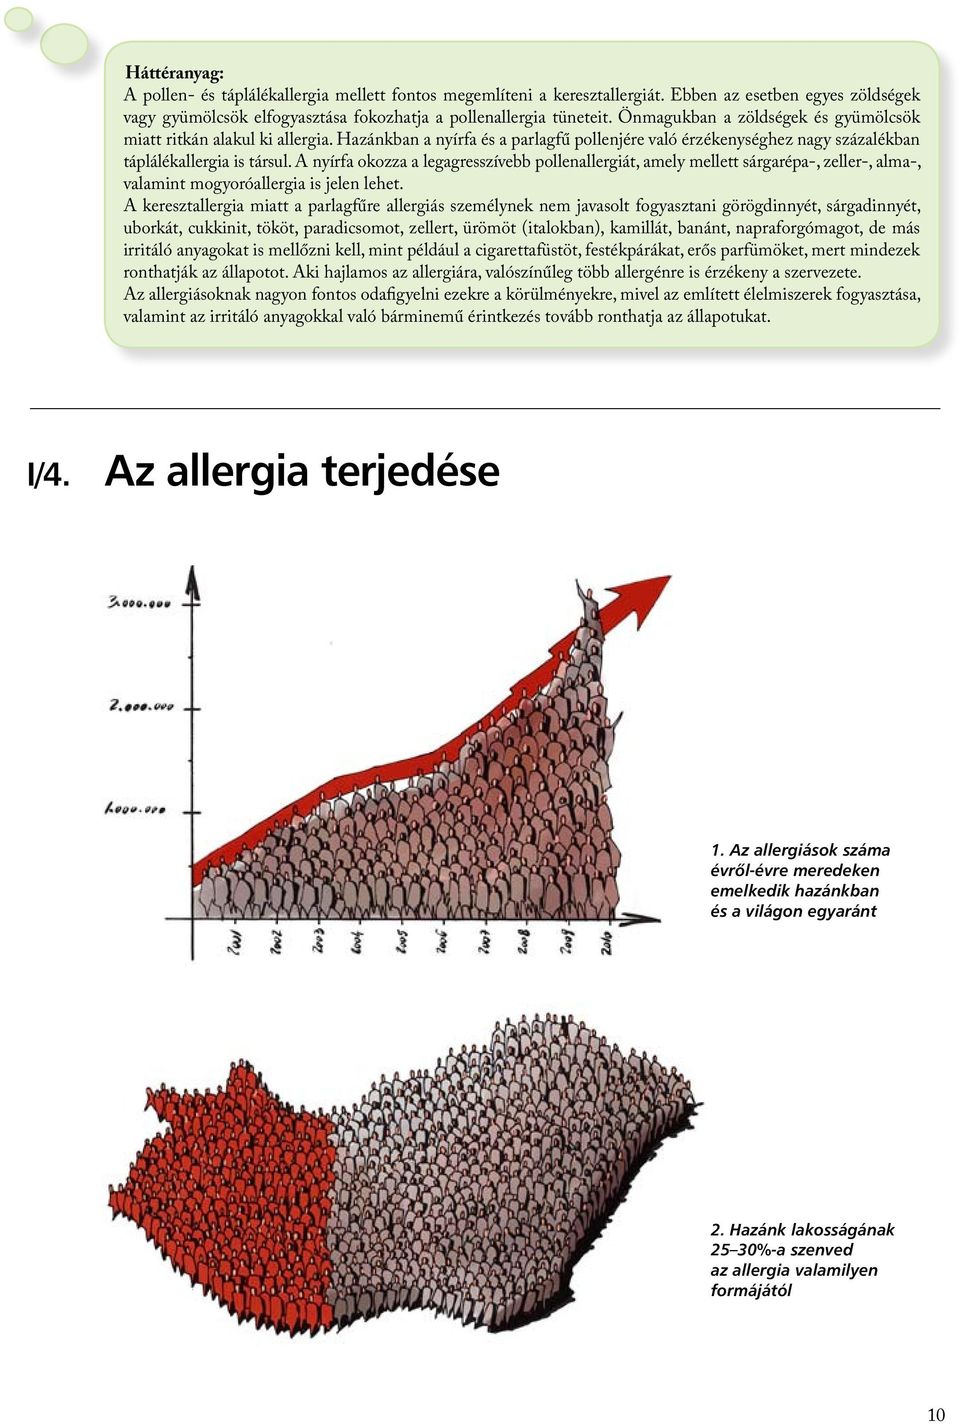 A nyírfa okozza a legagresszívebb pollenallergiát, amely mellett sárgarépa-, zeller-, alma-, valamint mogyoróallergia is jelen lehet.